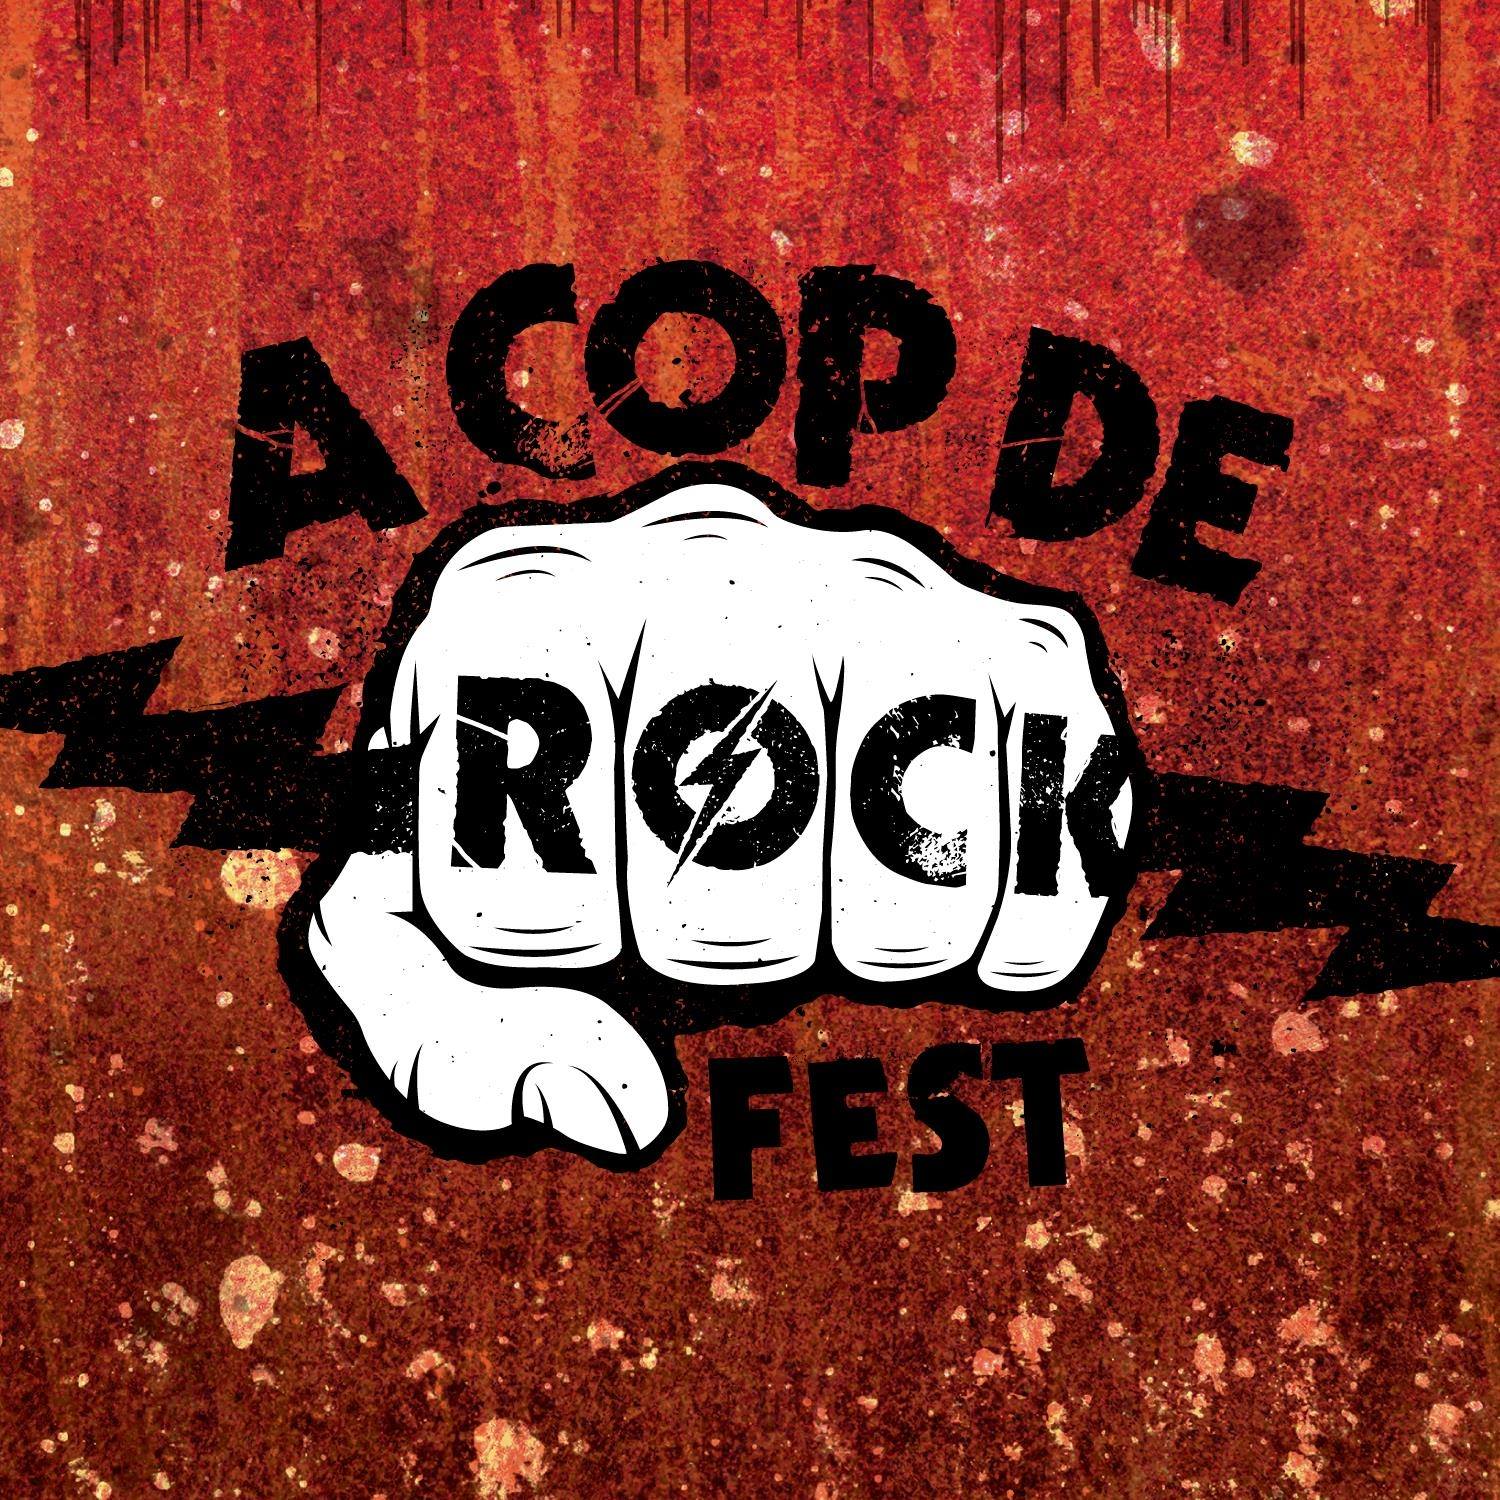 A Cop de Rock Fest 2019 – 11 y 12 de octubre – POBLE ESPANYOL (BARCELONA)